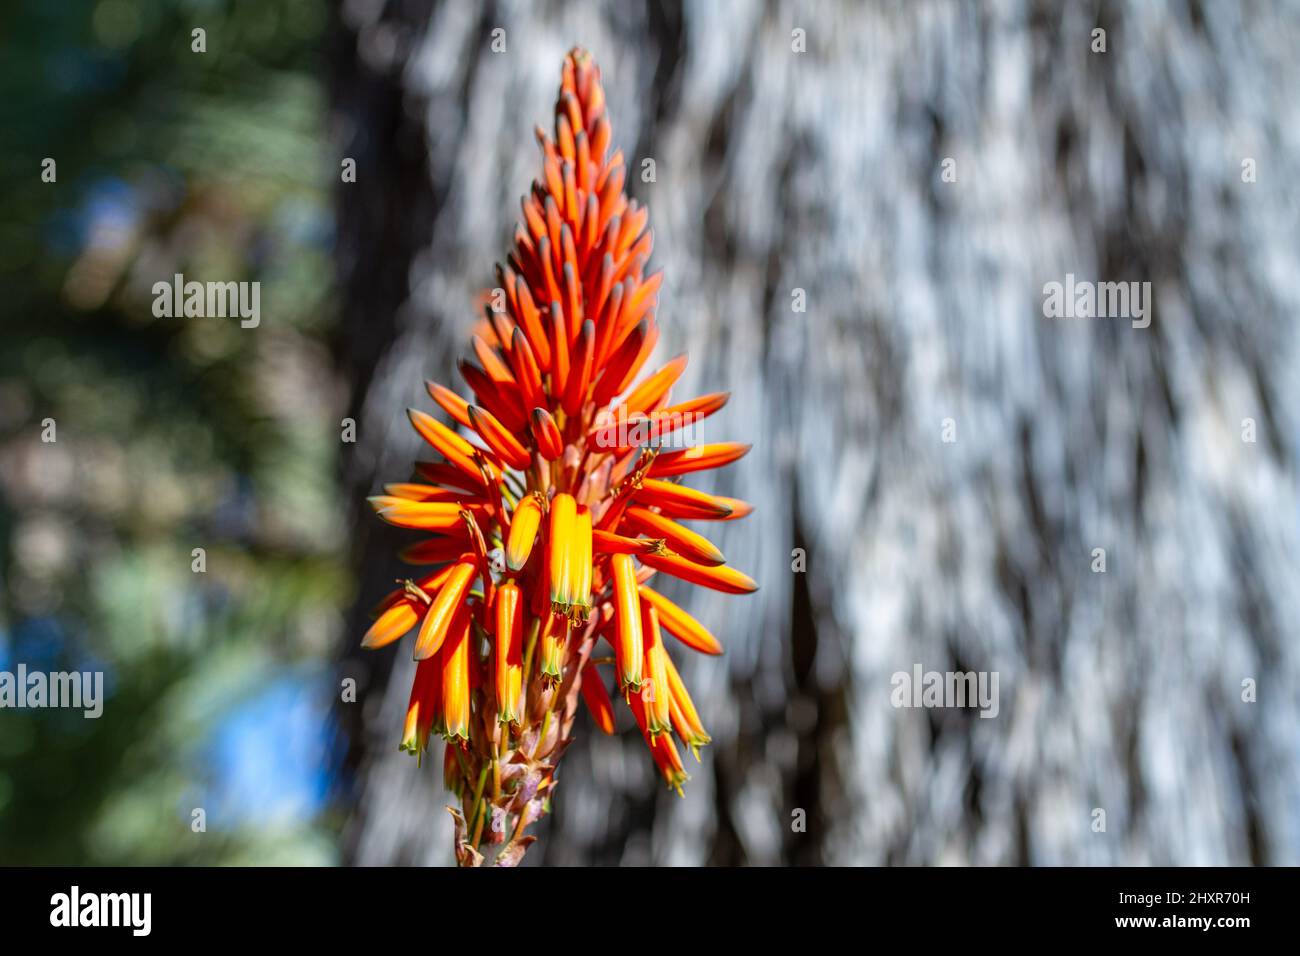 Bitter aloe (Aloe ferox), detail of flowers Stock Photo